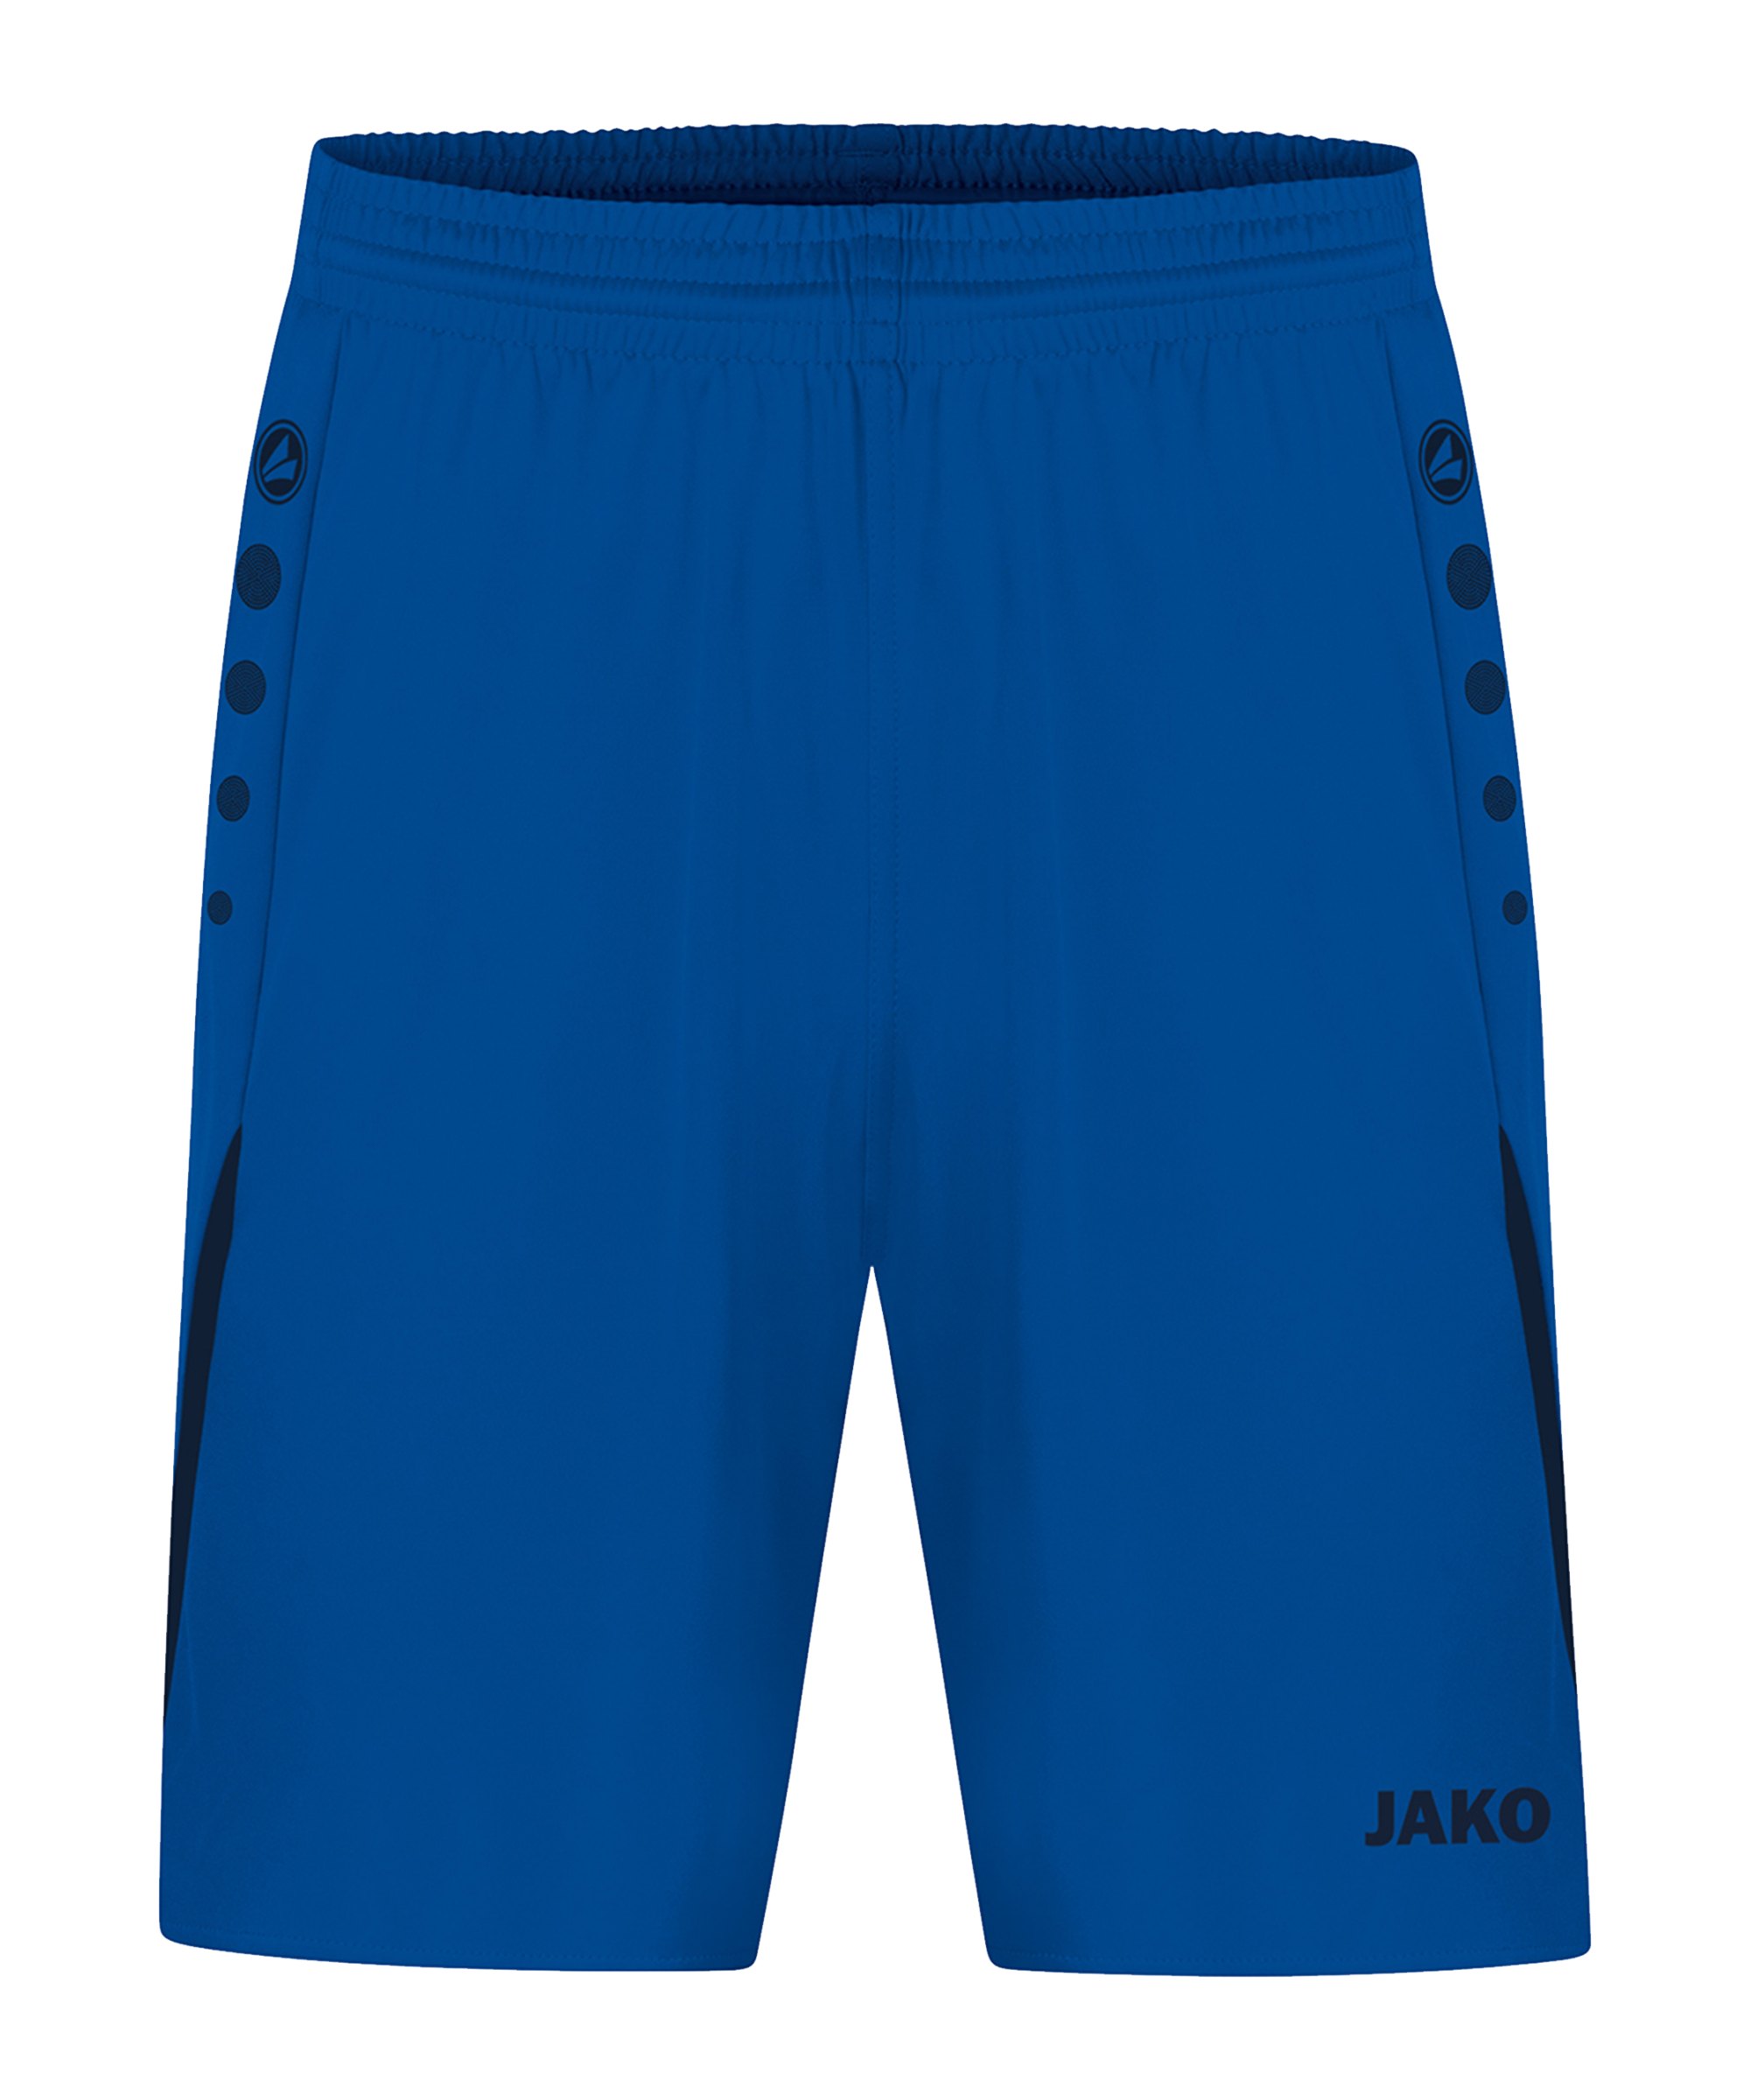 JAKO Challenge Short Blau F403 - blau